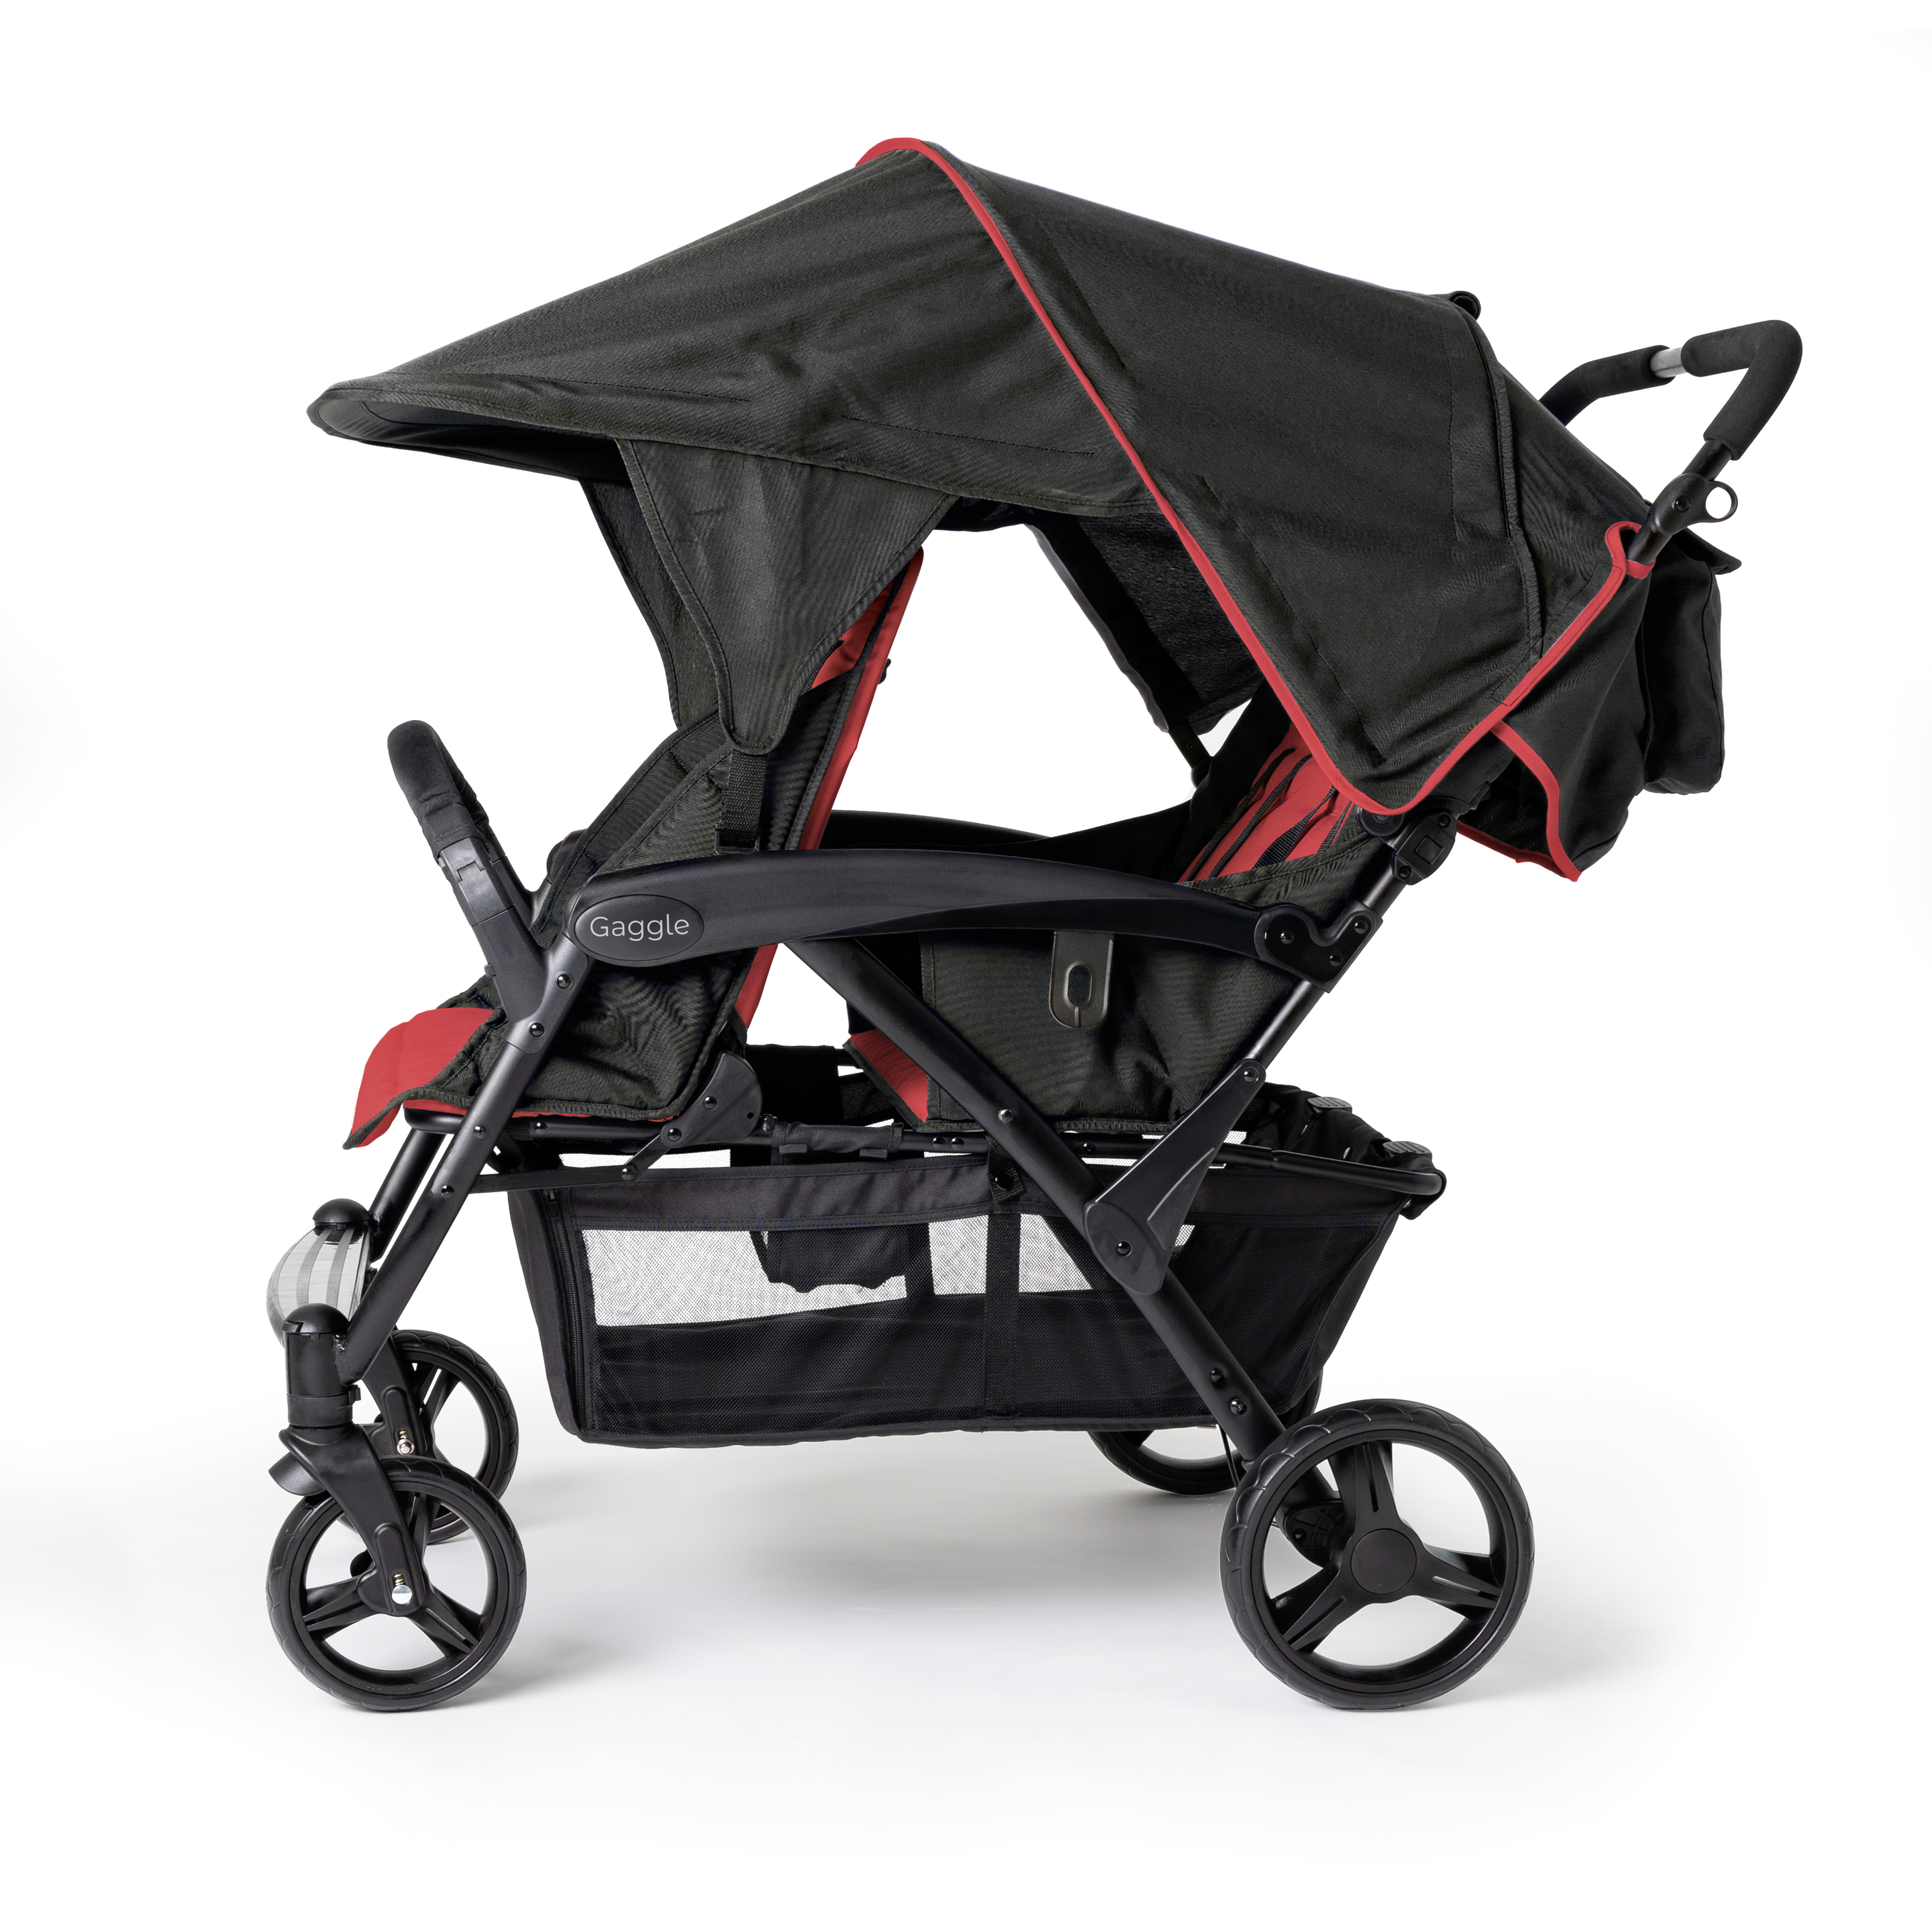 Gaggle Odyssey 4x4 quad kinderwagen / buggy voor 4 kinderen in rood/zwart